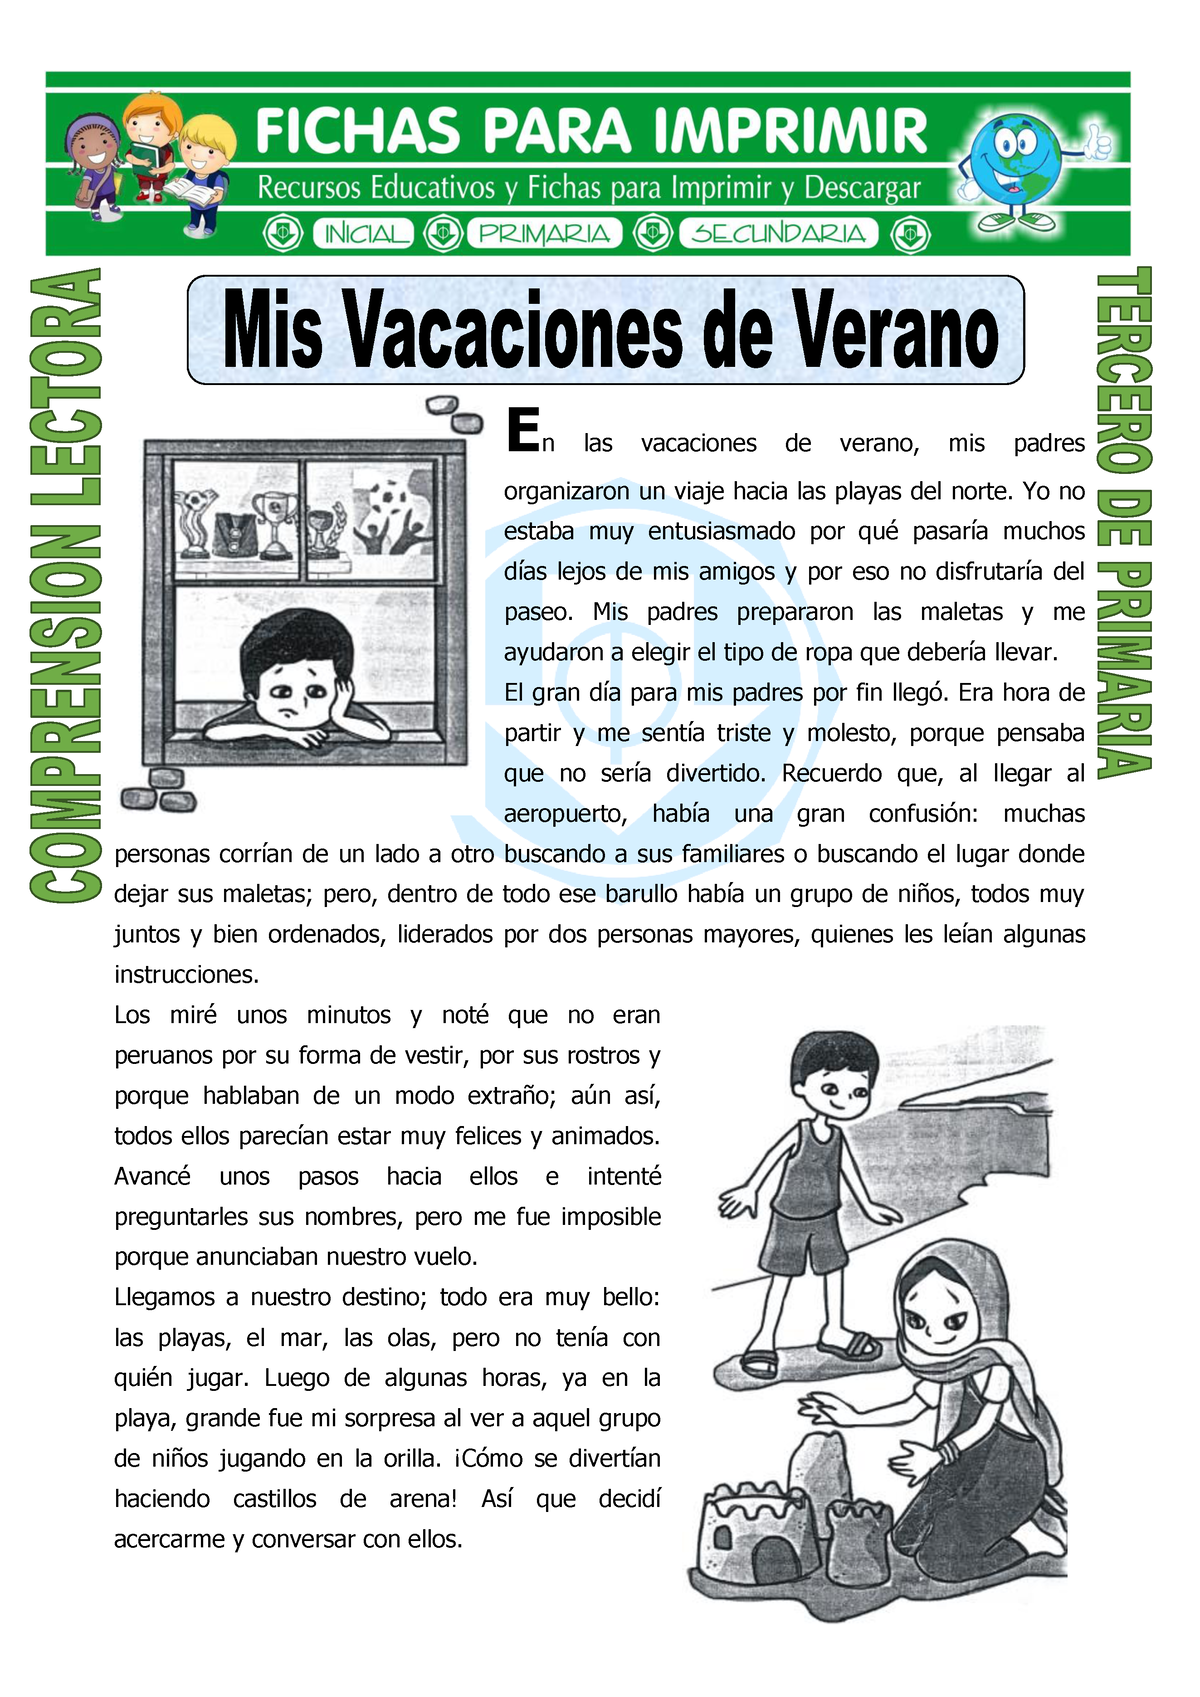 02 Mis Vacaciones De Verano Autor Fichas Para Imprimir Y Materiales Educativos Para Primaria 4801